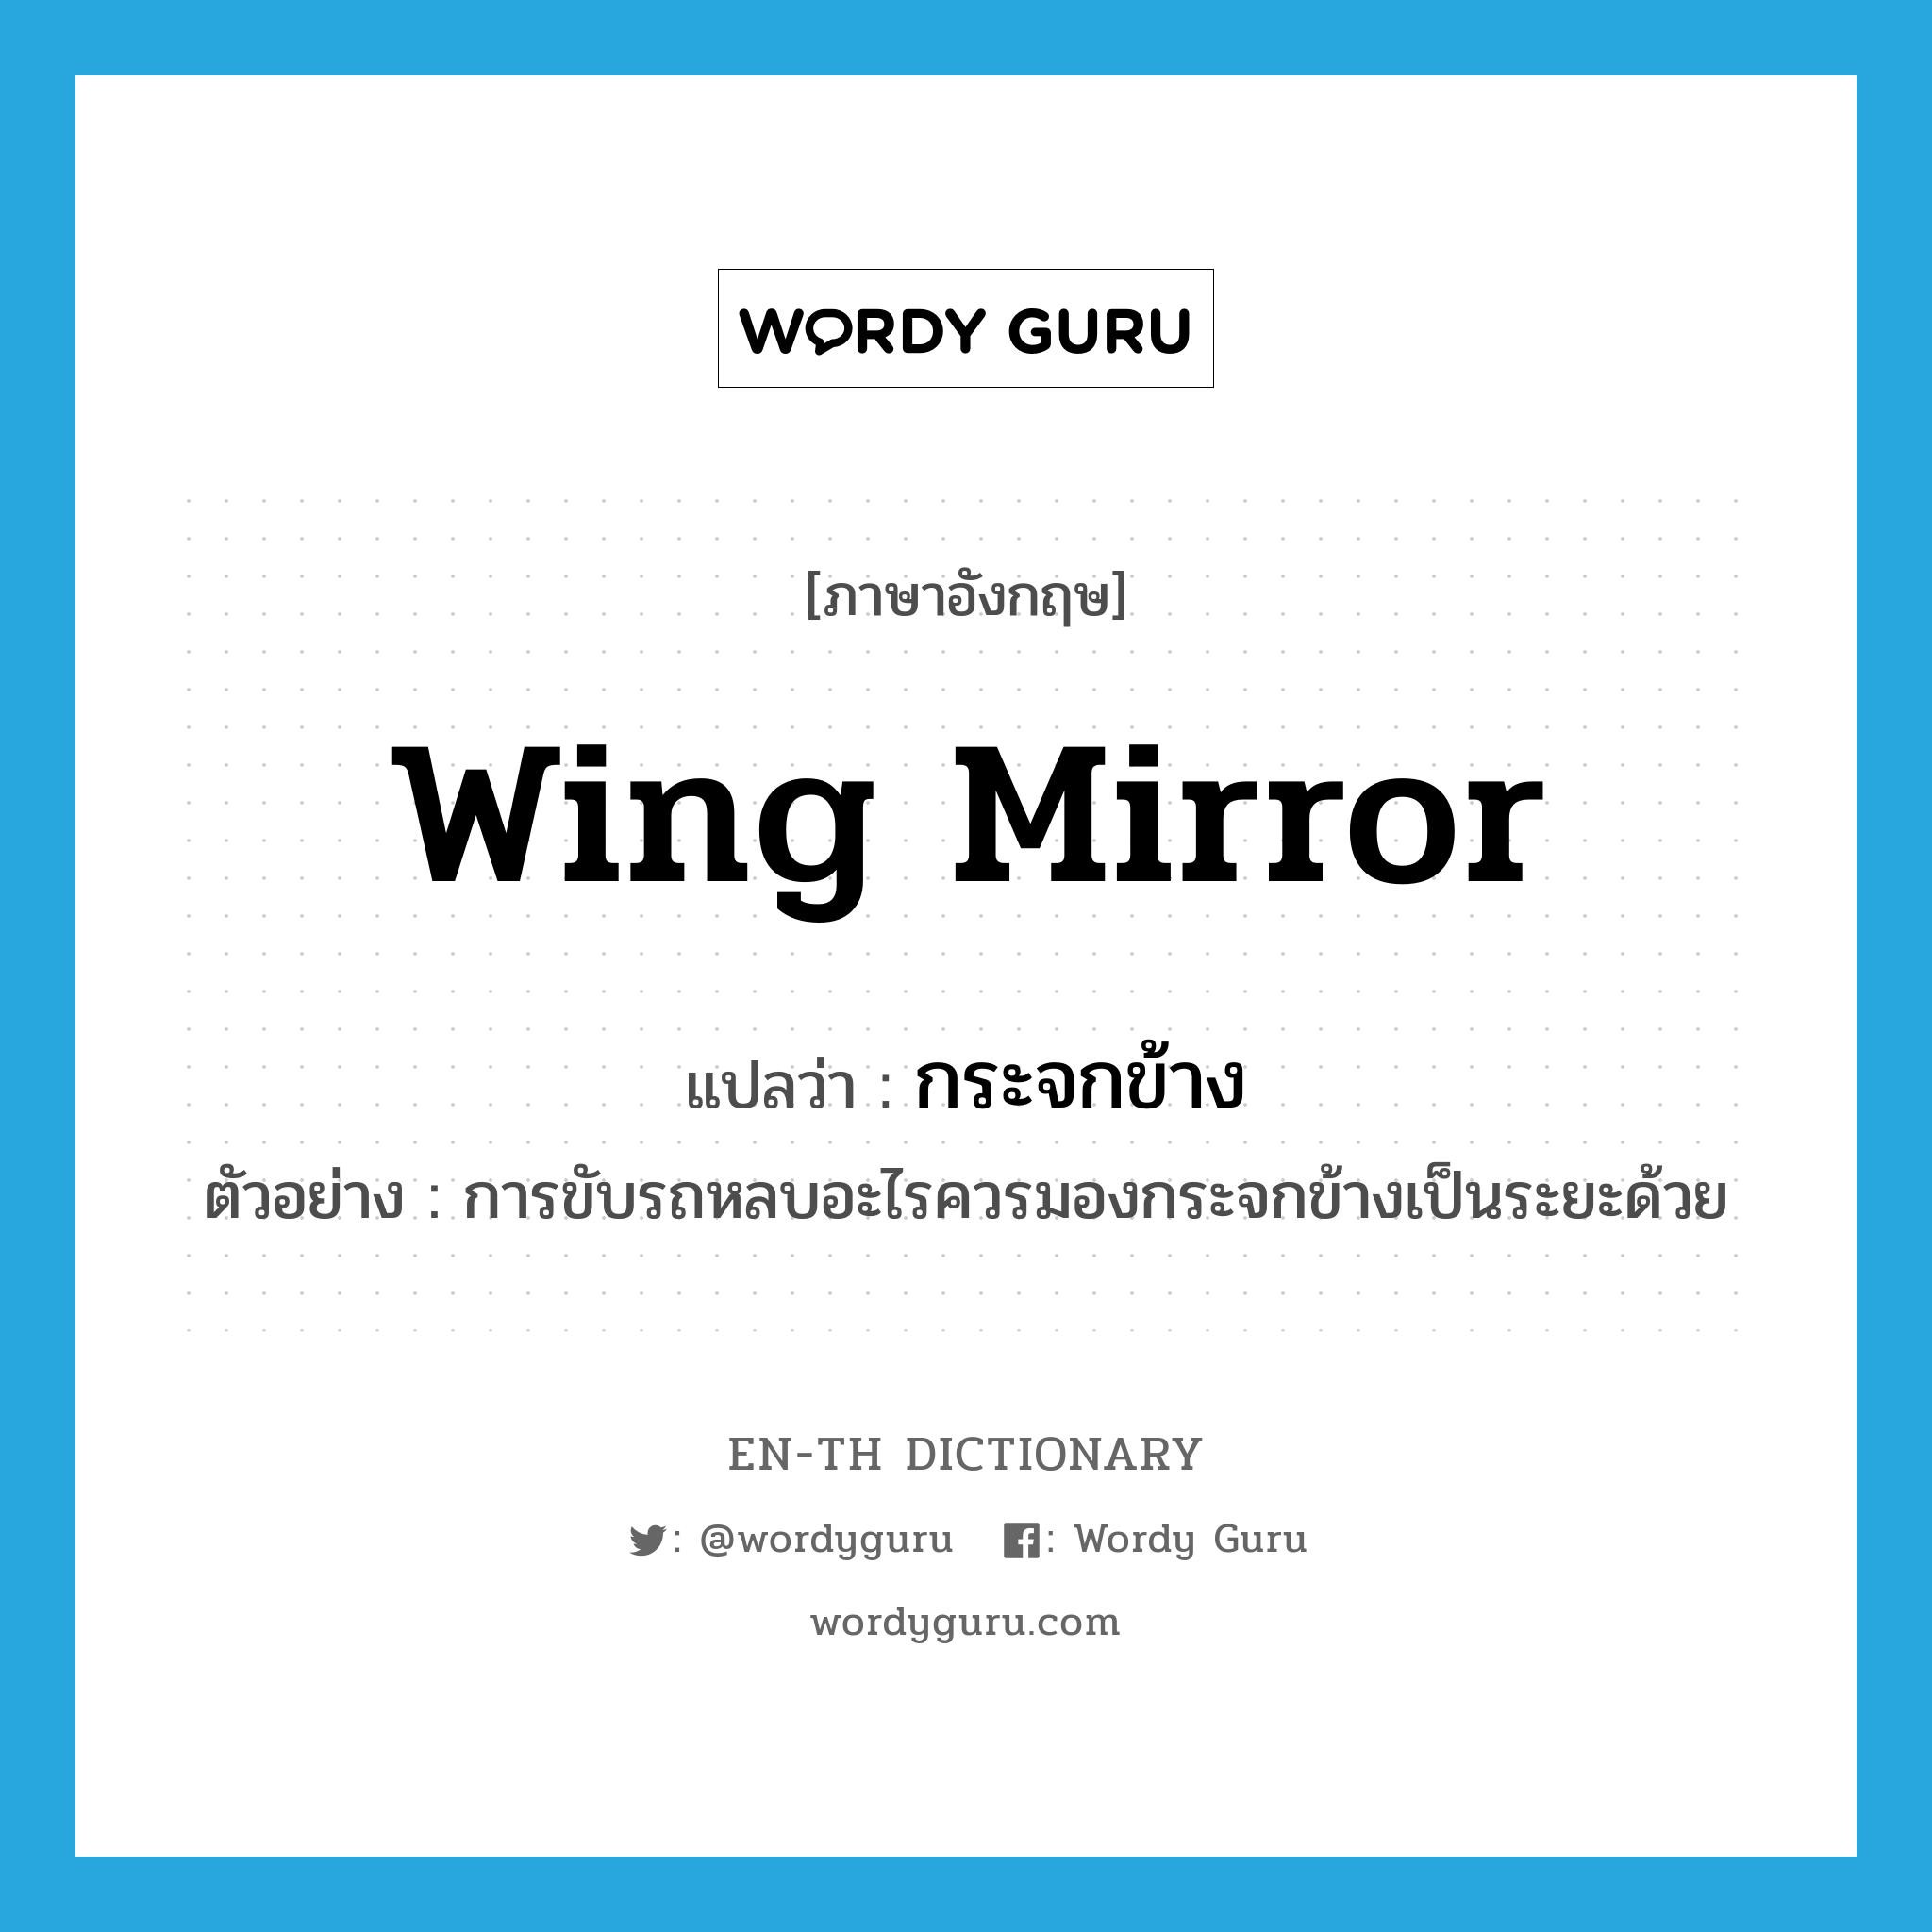 wing mirror แปลว่า?, คำศัพท์ภาษาอังกฤษ wing mirror แปลว่า กระจกข้าง ประเภท N ตัวอย่าง การขับรถหลบอะไรควรมองกระจกข้างเป็นระยะด้วย หมวด N